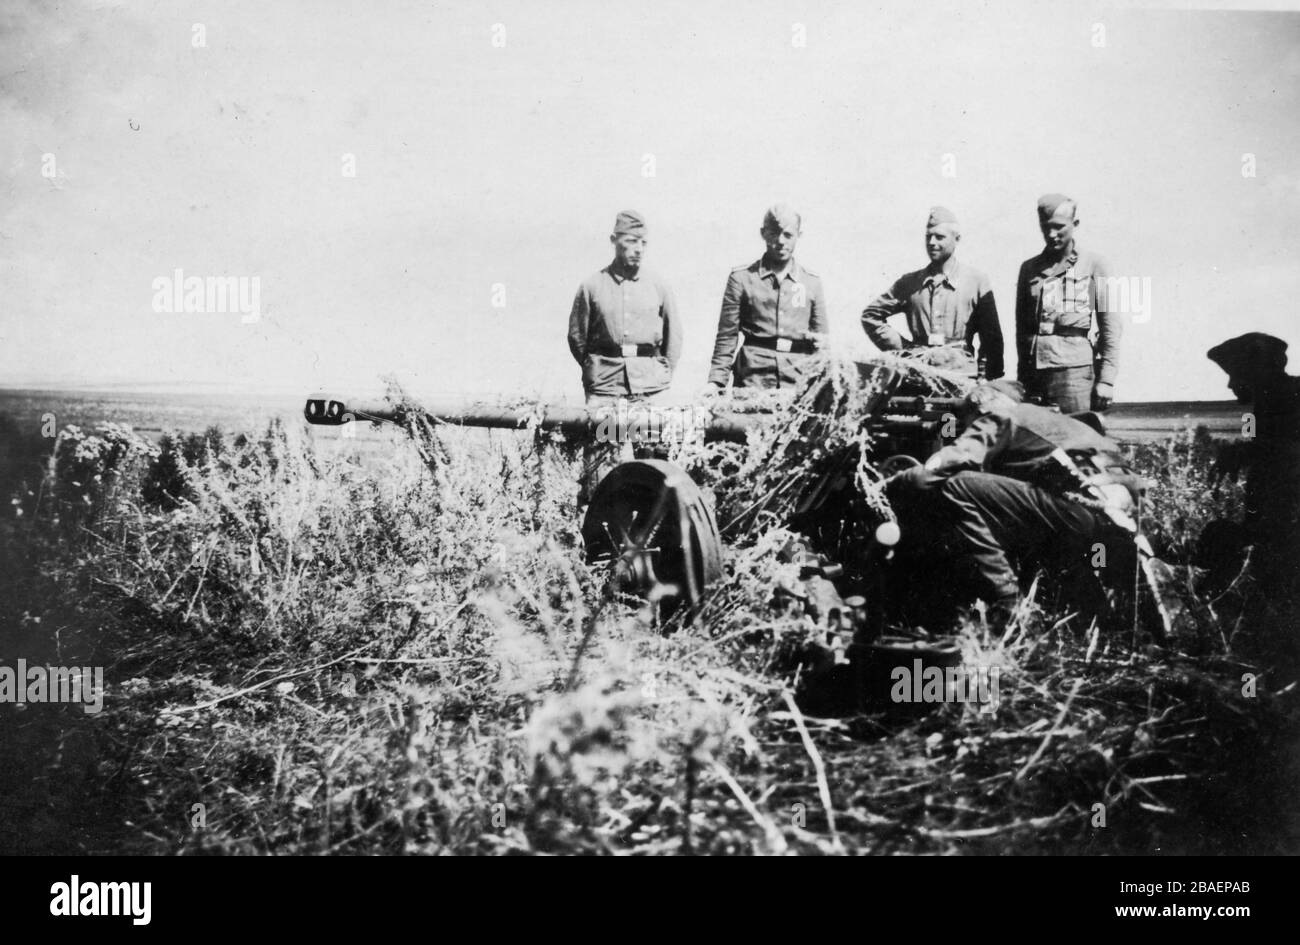 Seconda guerra mondiale / seconda guerra mondiale Foto storica dell'invasione tedesca - truppe Waffen SS in URSS (Bielorussia) - 1942 Borisow (regione di Barysaw Minsk) - artiglieria Foto Stock